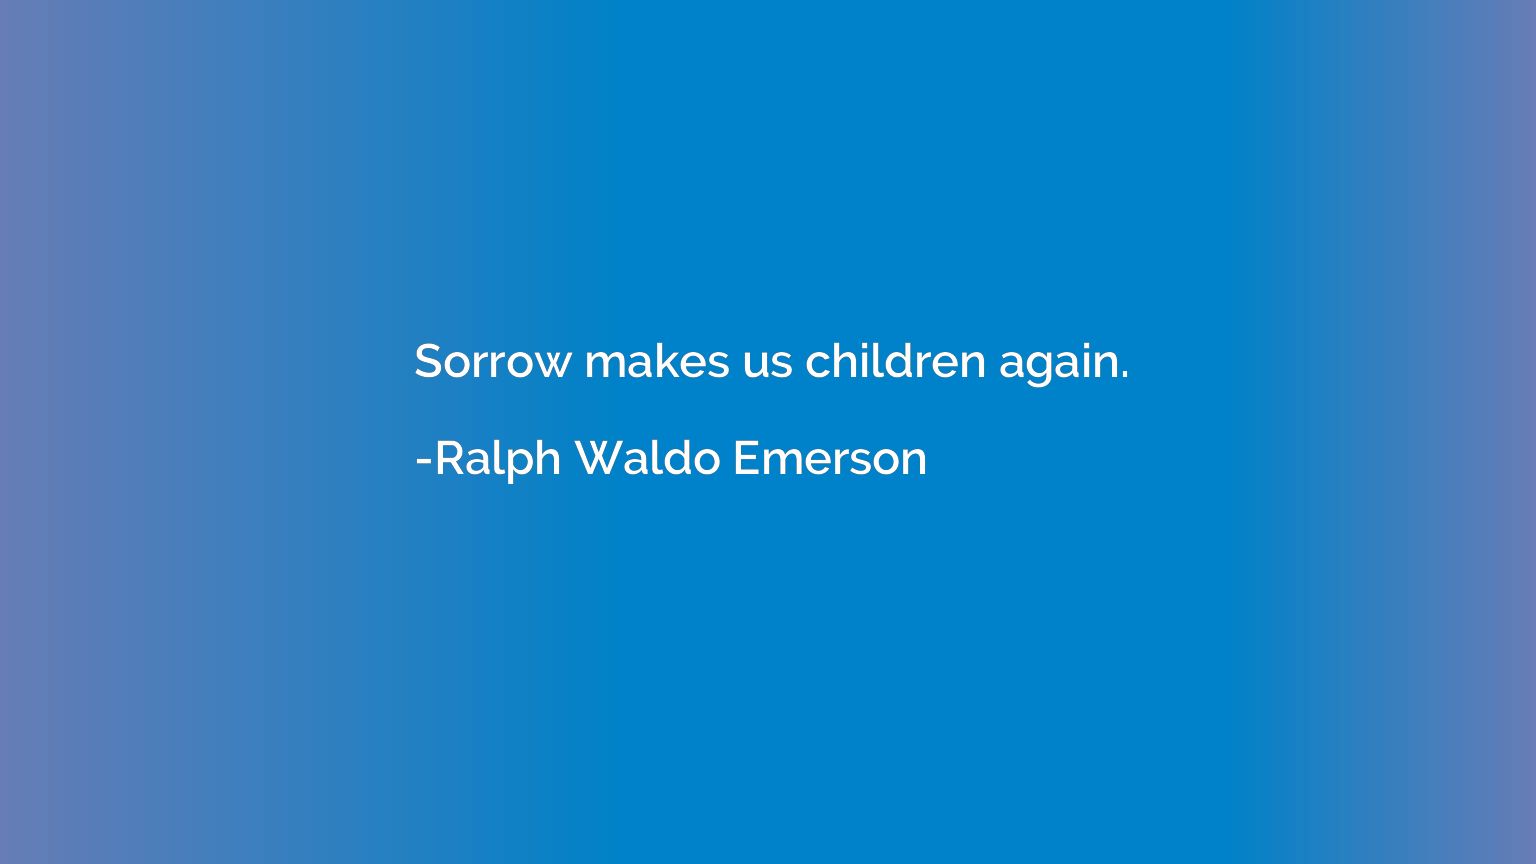 Sorrow makes us children again.